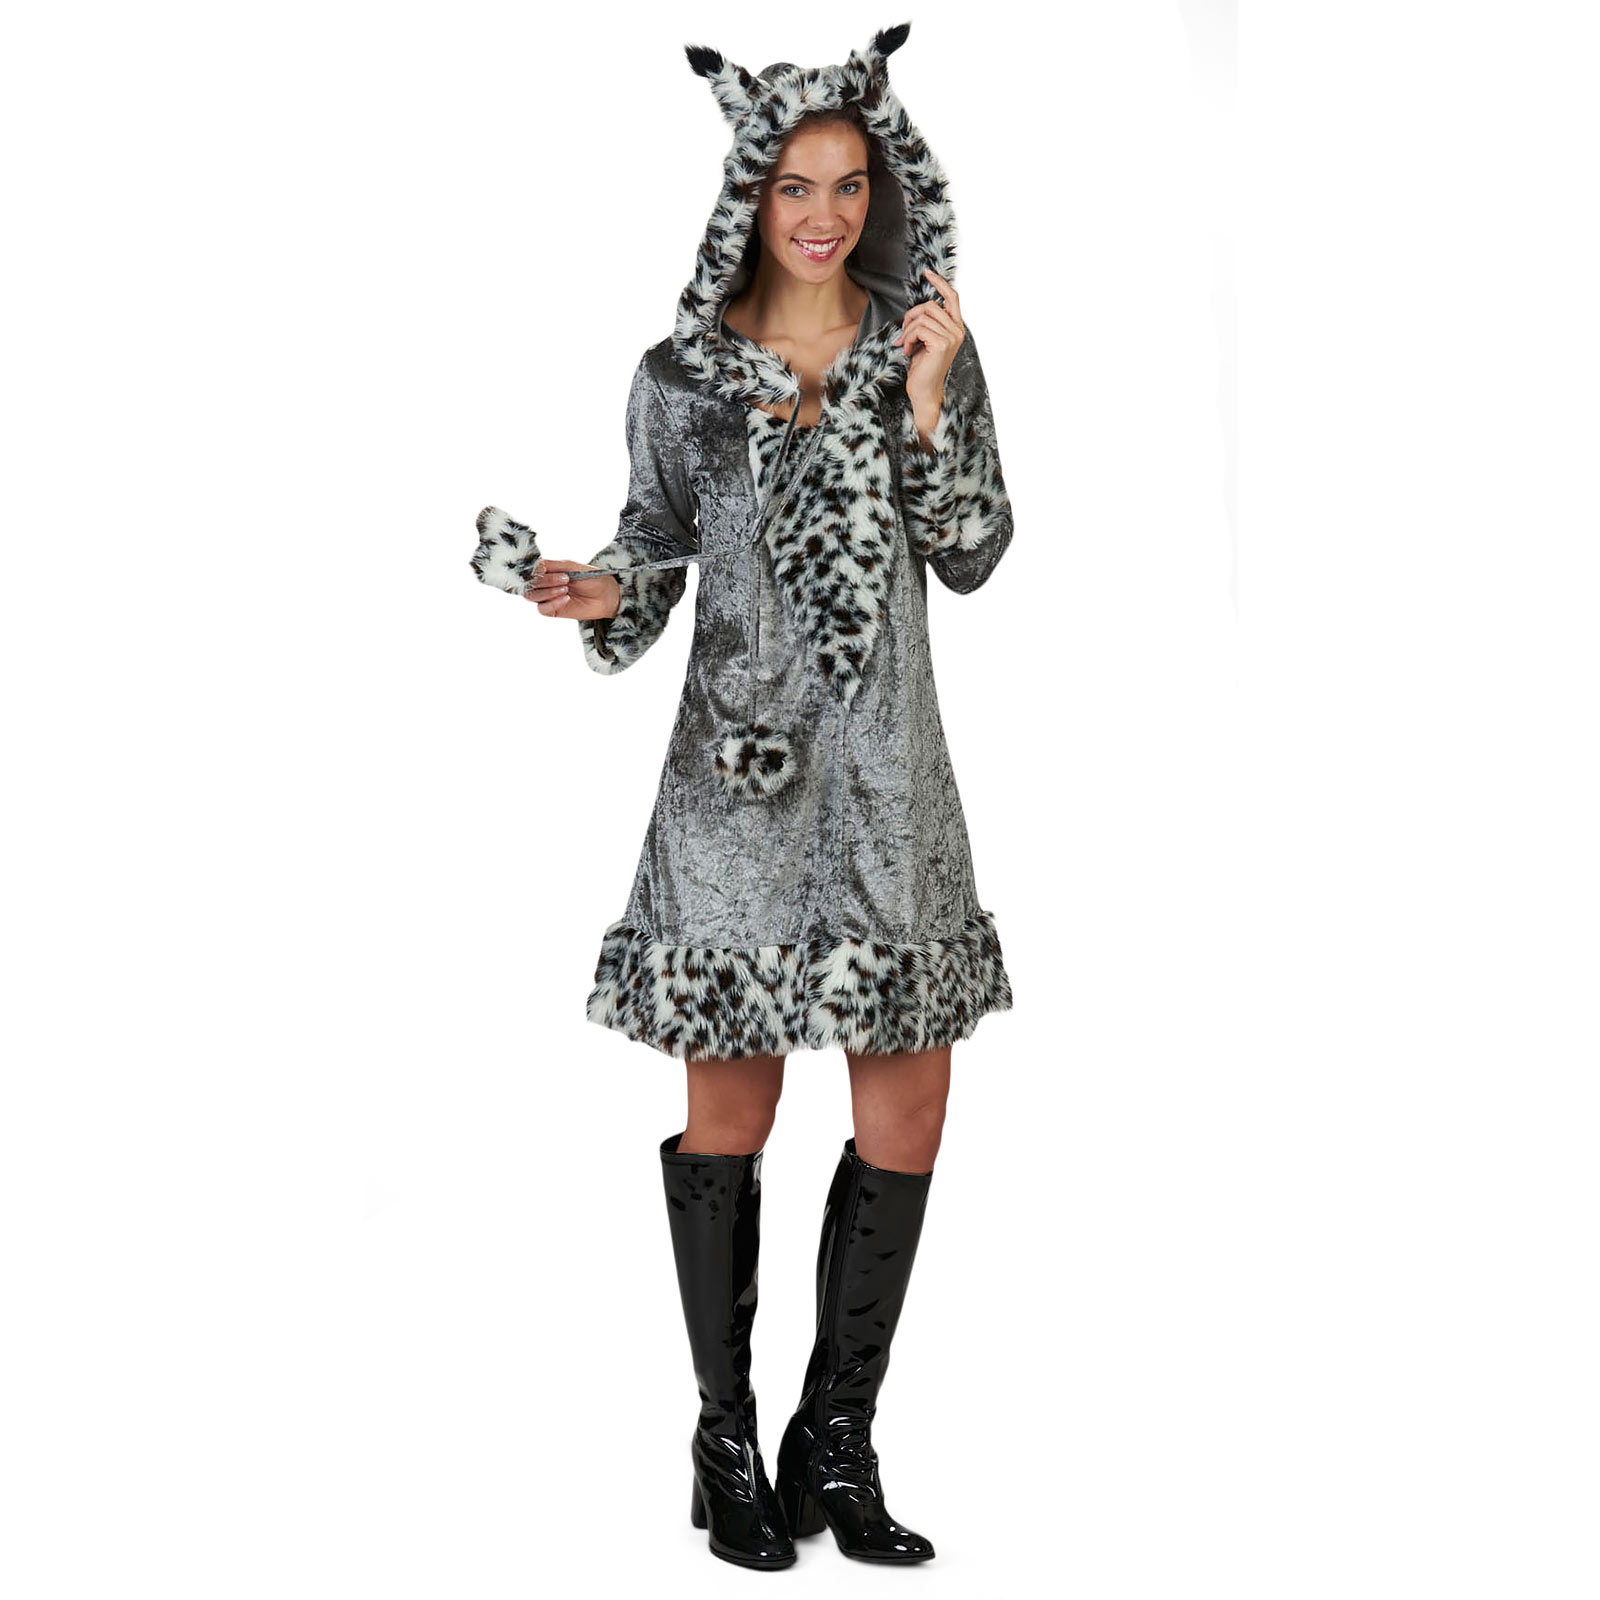 Lynx - Plush Costume for Women